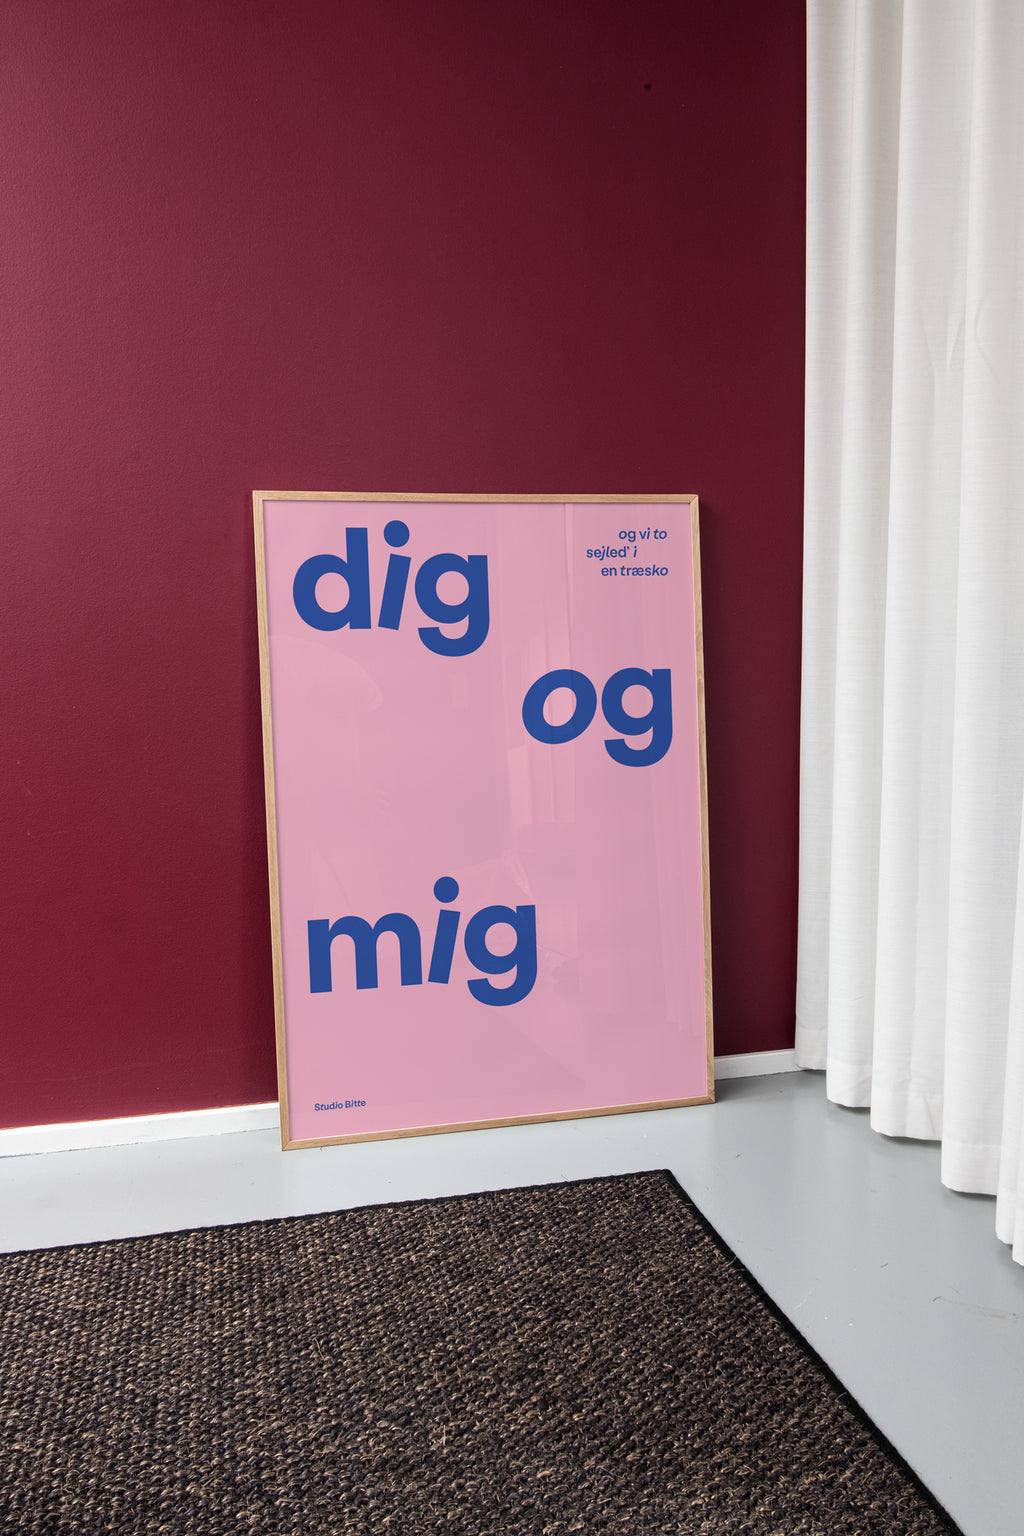 Ellers Problem mudder Studio Bitte – "Dig og mig" plakat til børneværelset